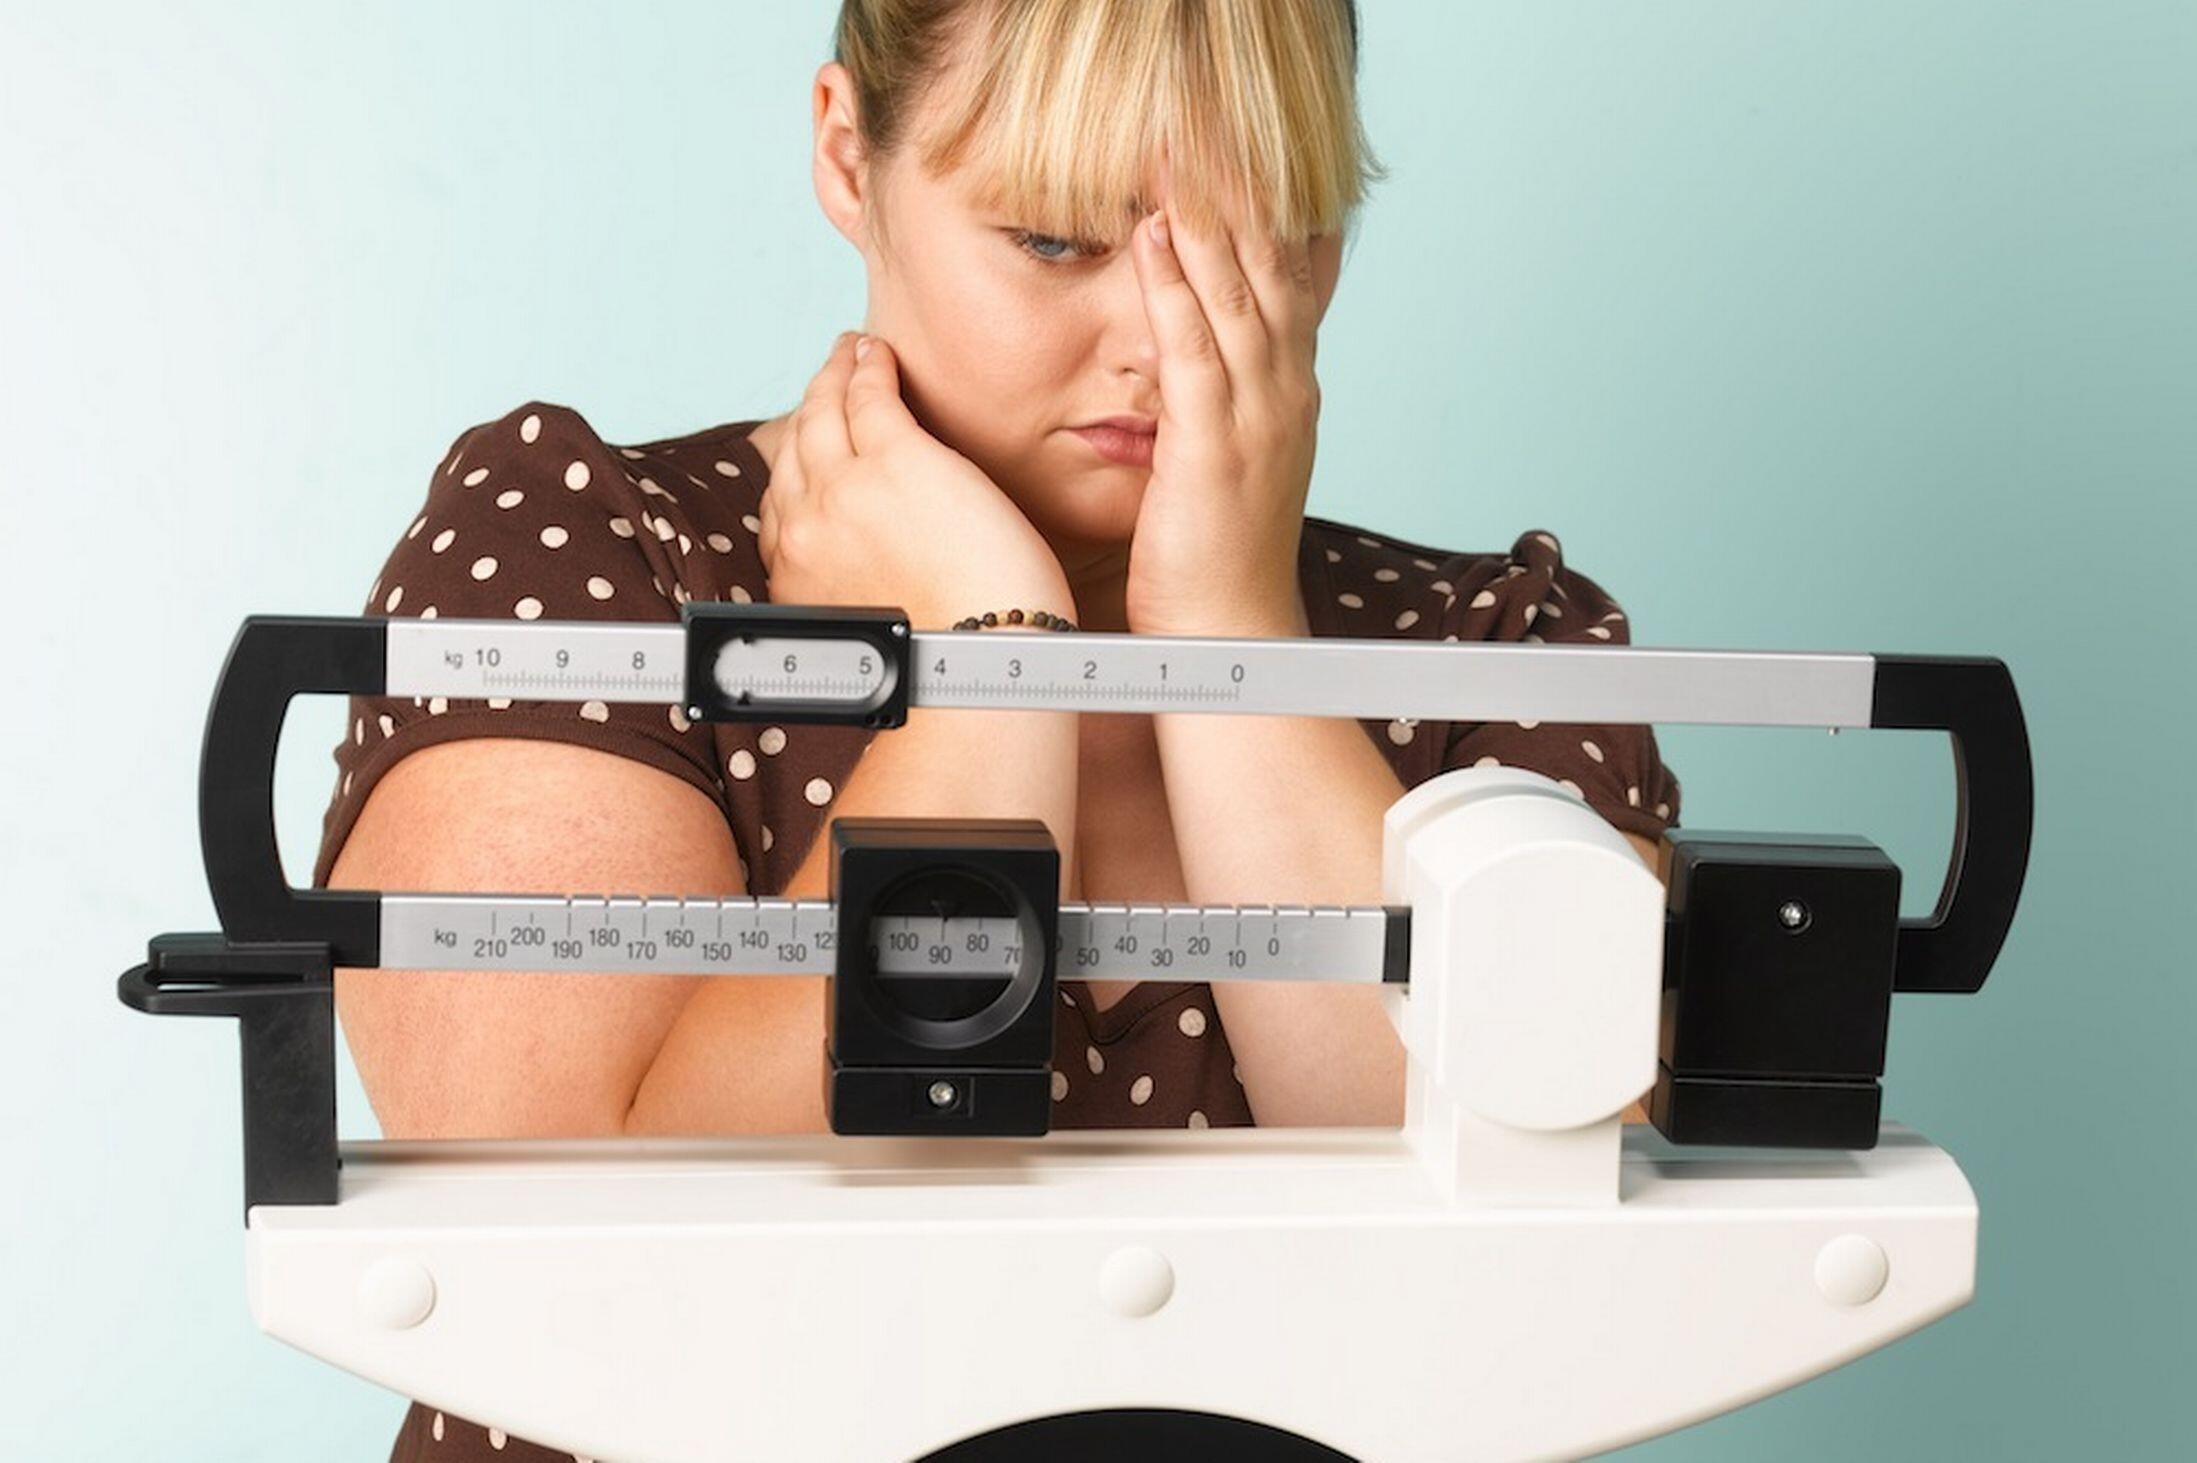 Aç kalmak metabolizma hızını yavaşlatıyor - Sağlık Haberleri